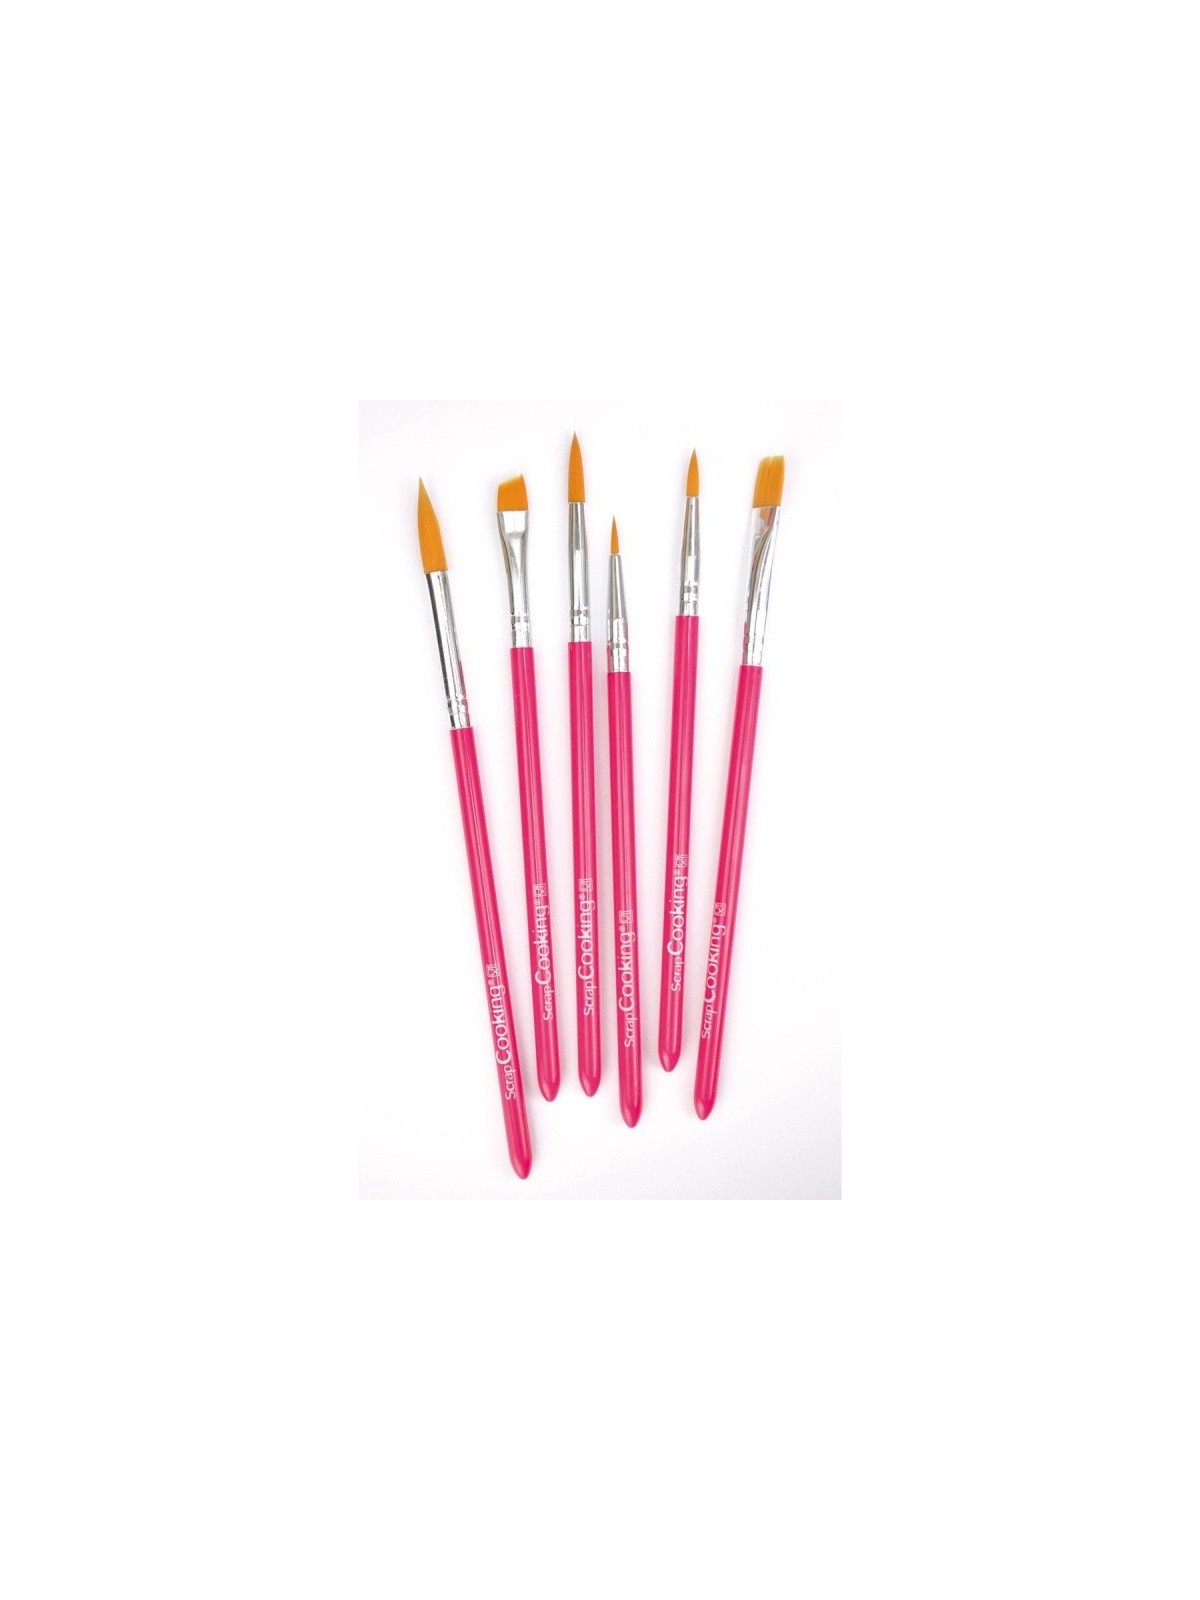 SCRAPCOOKING set of brushes 6pcs